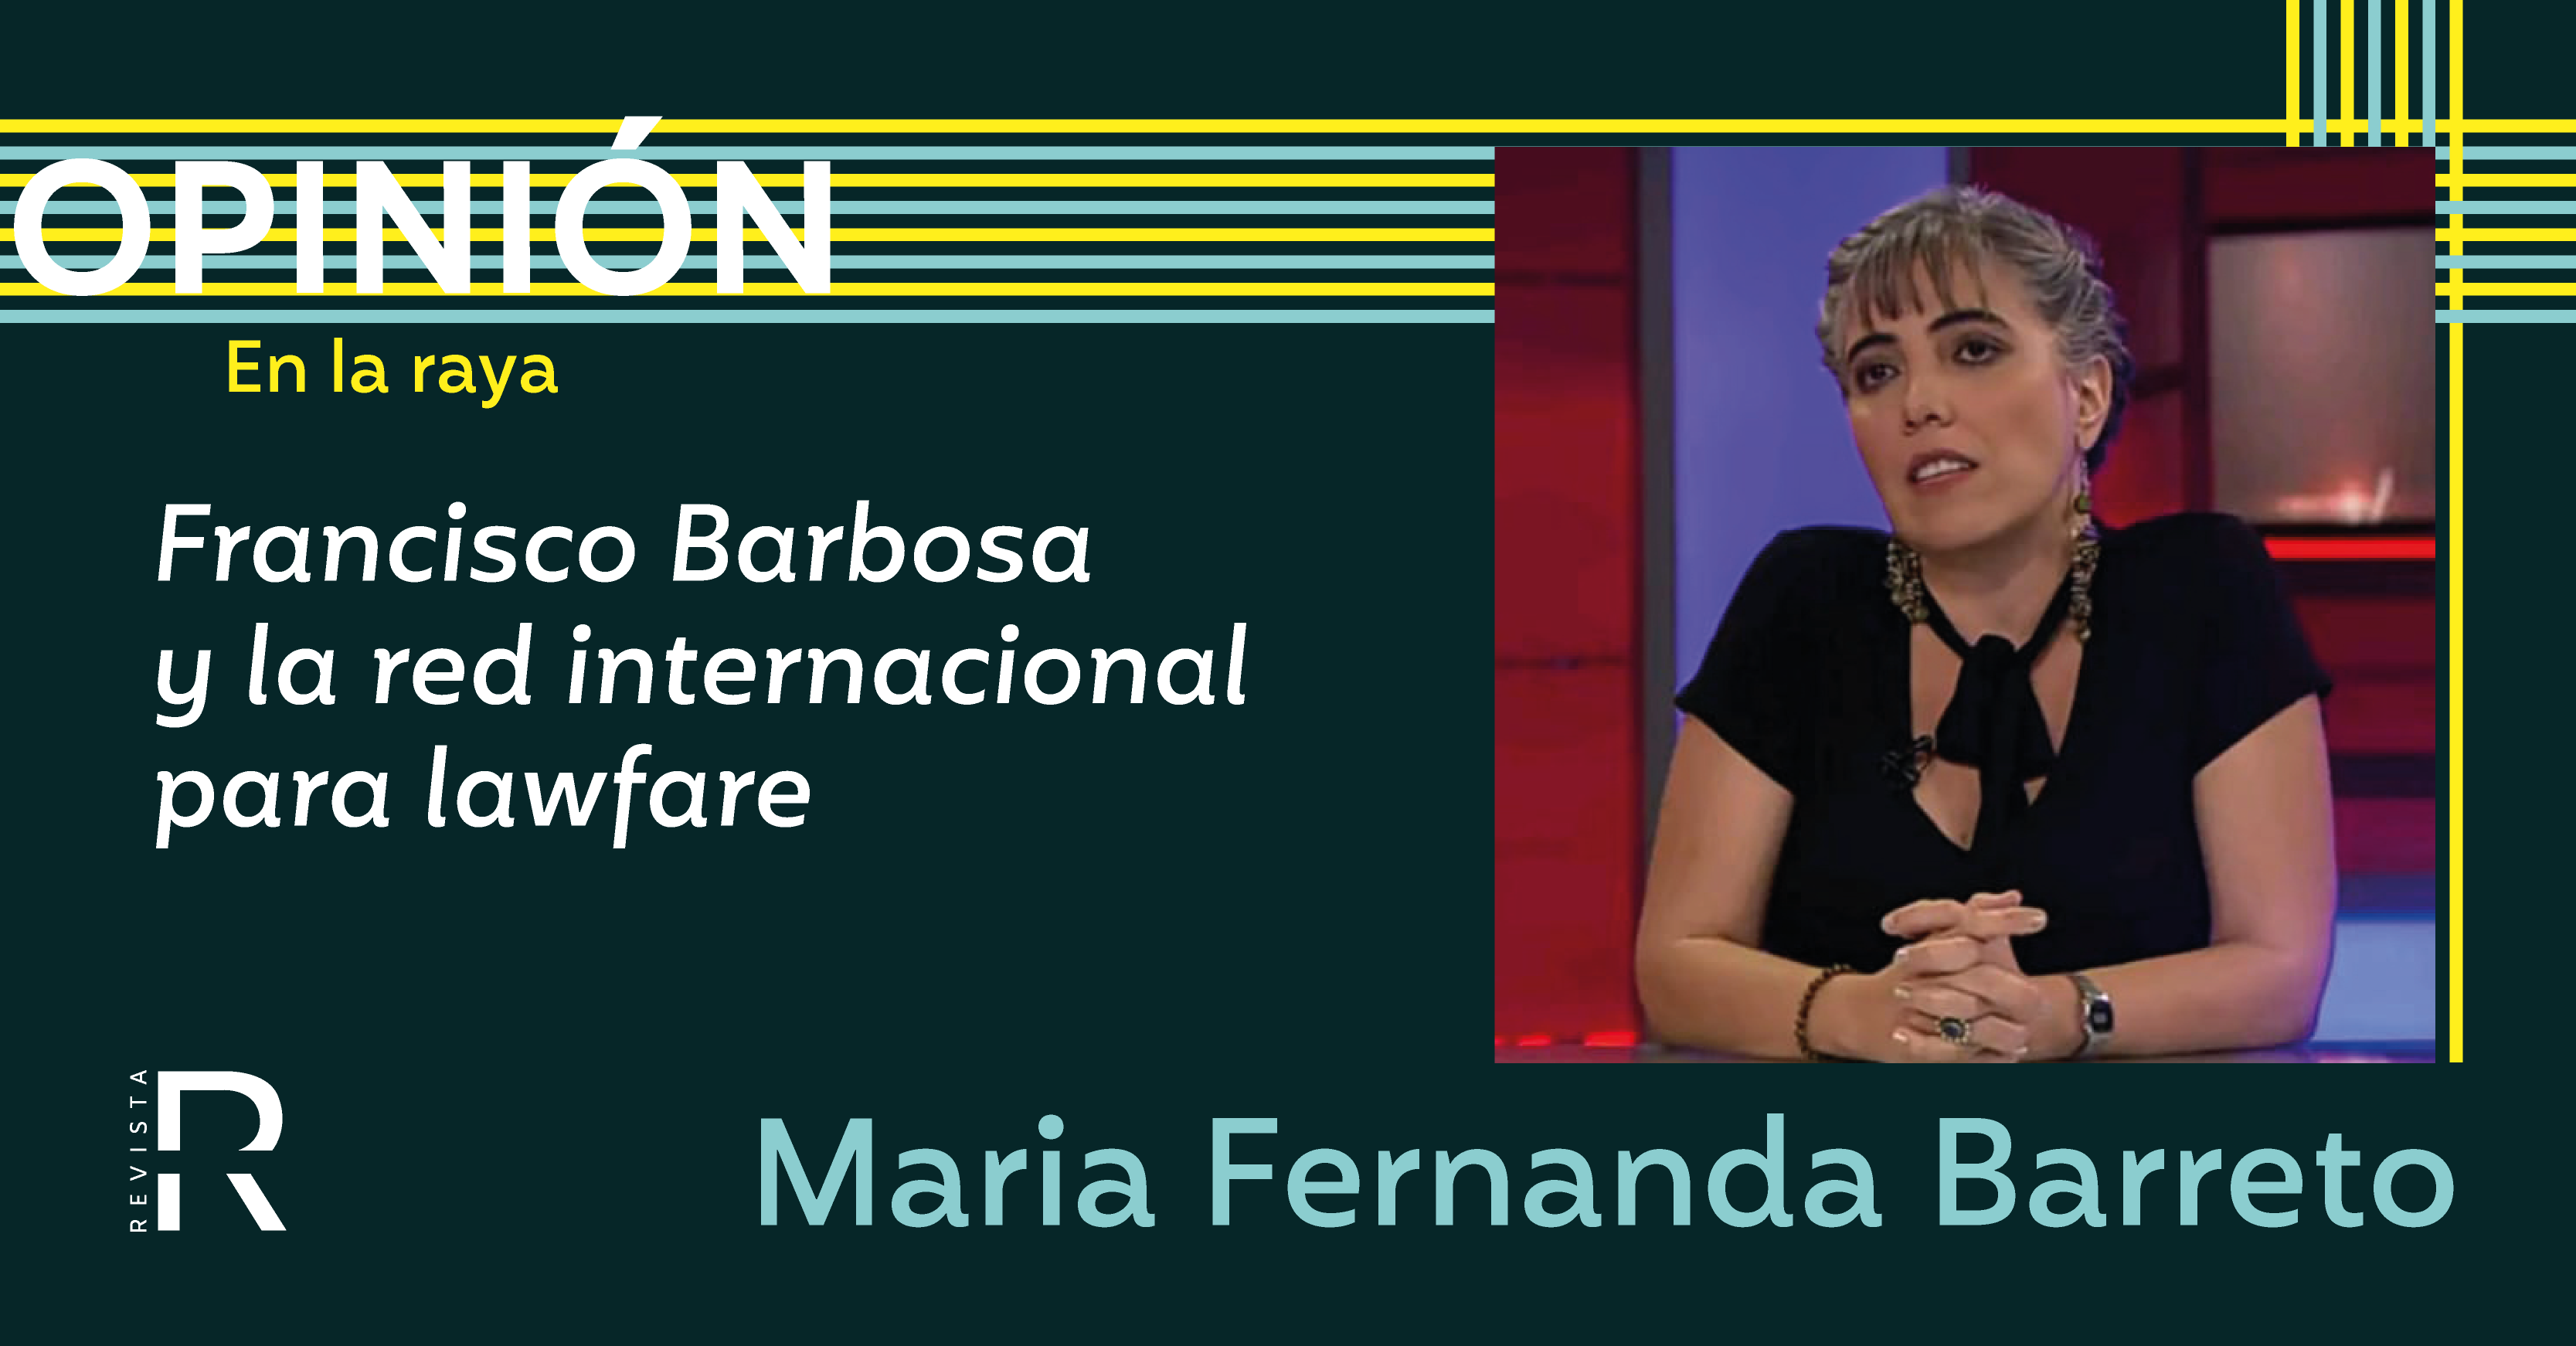 Francisco Barbosa y la red internacional para lawfare